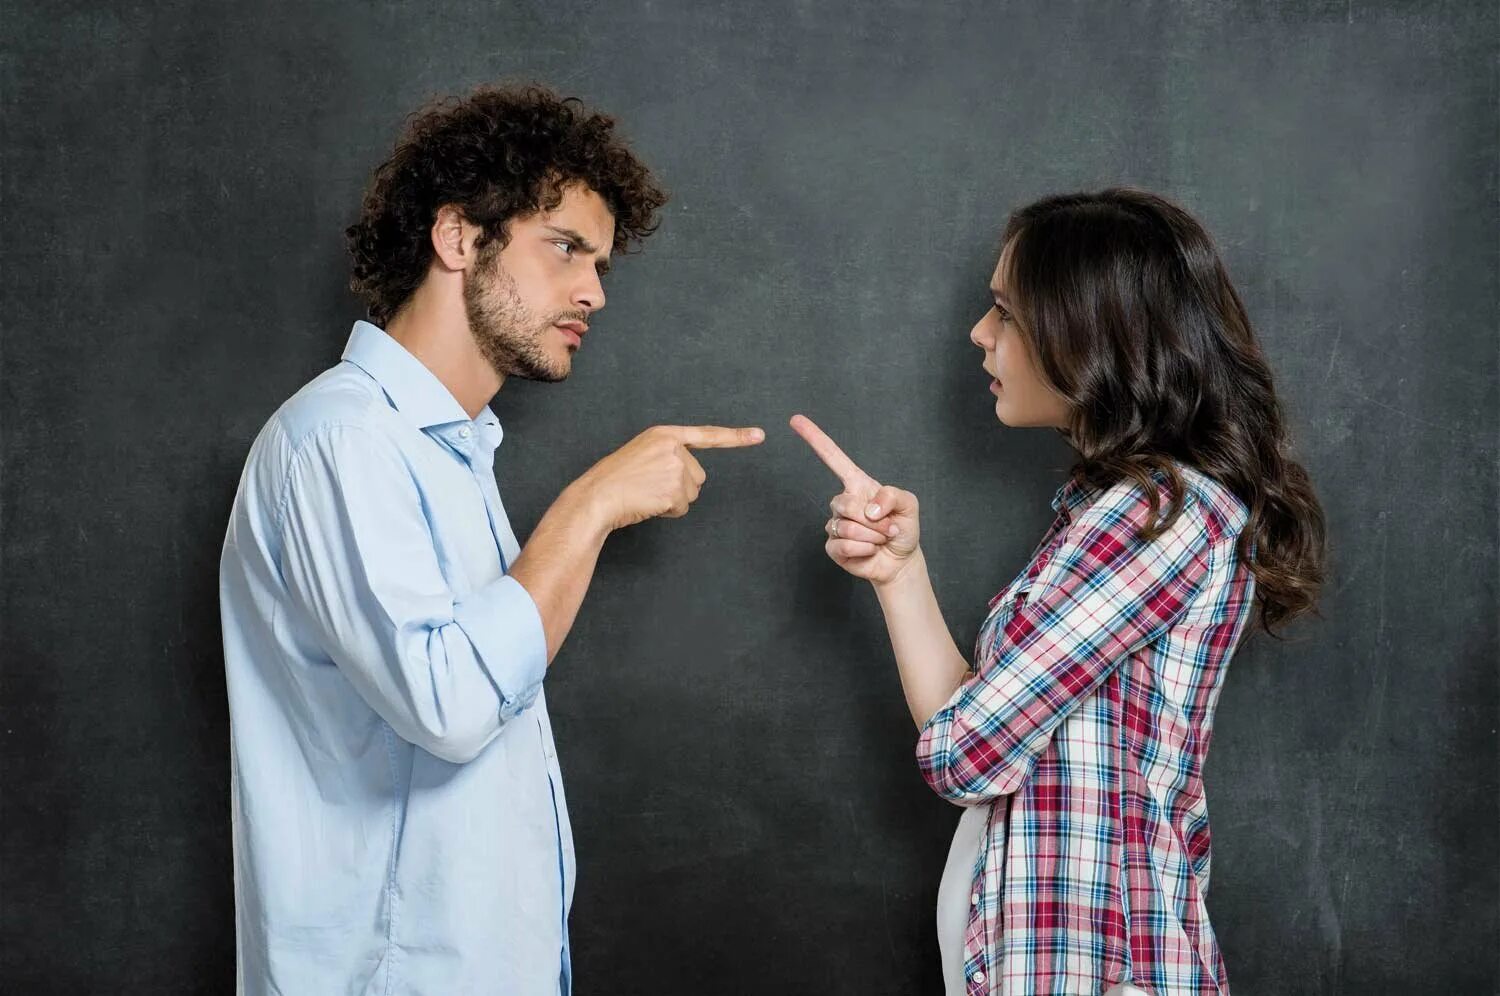 Конфликт. Люди спорят. Мужчина и женщина спорят. Спор между мужчиной и женщиной. Речь мужчины и женщины